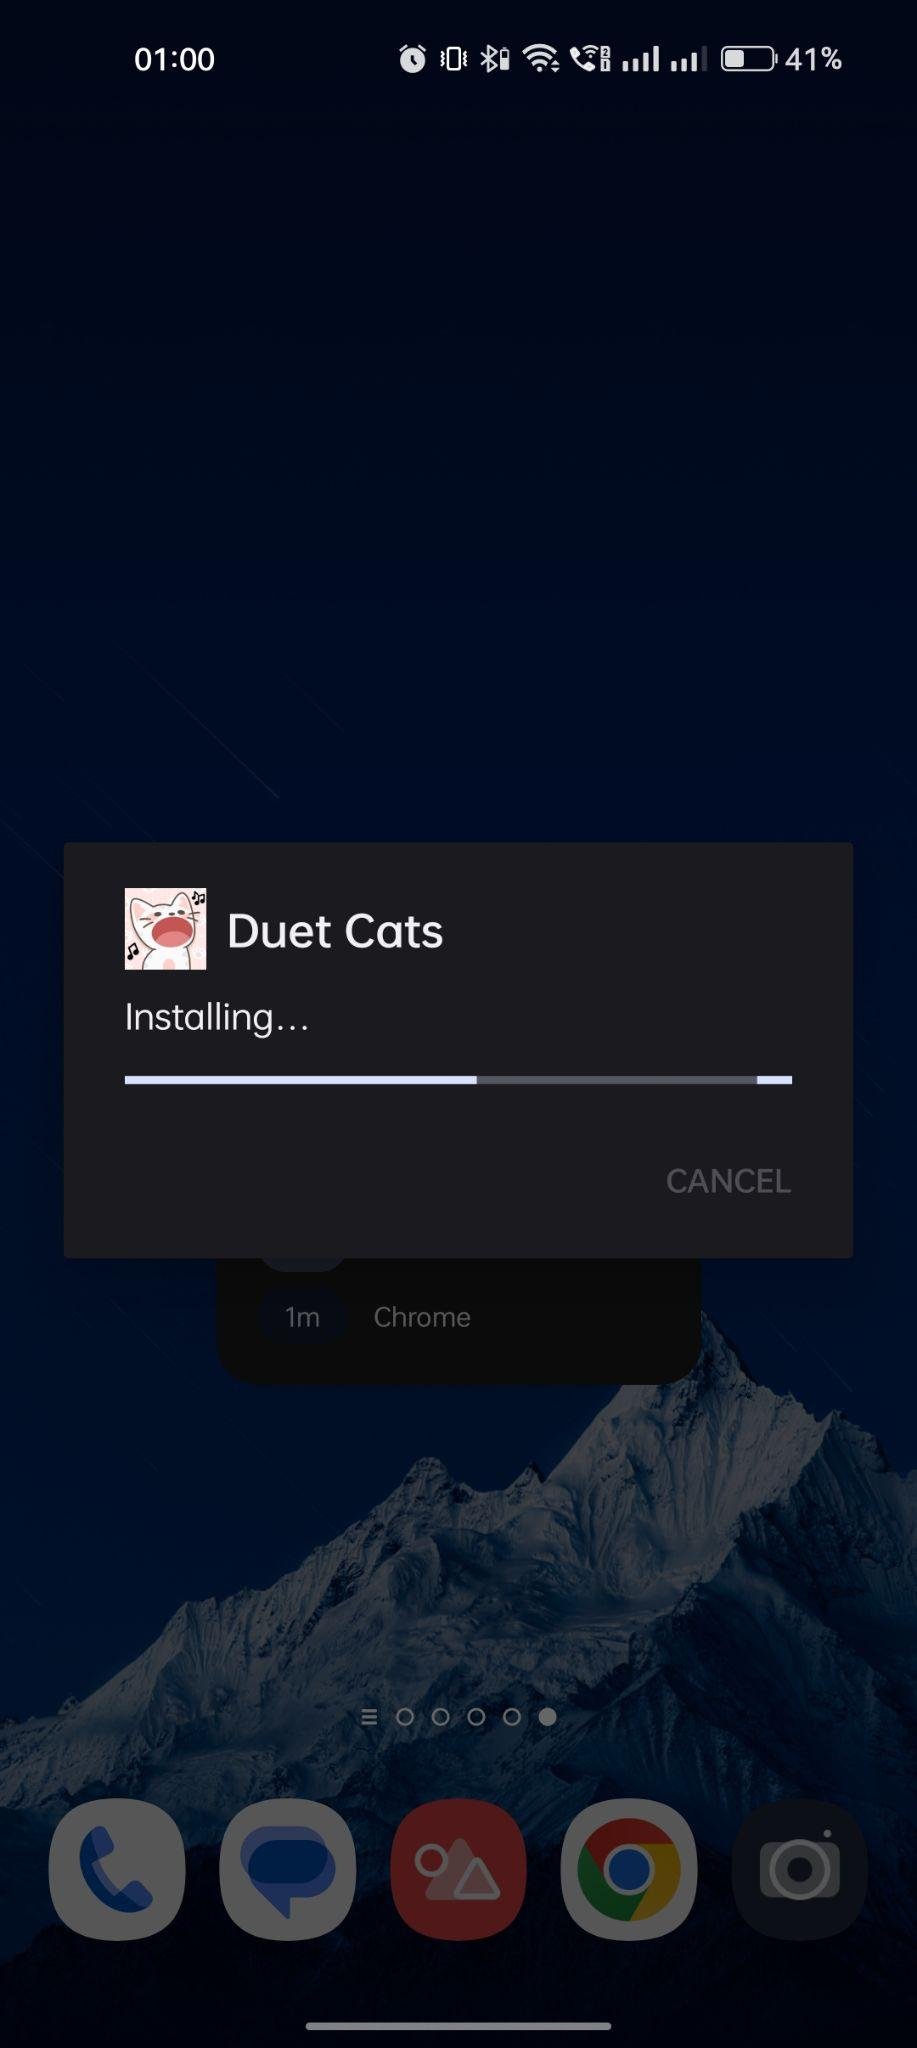 Duet Cats apk installing